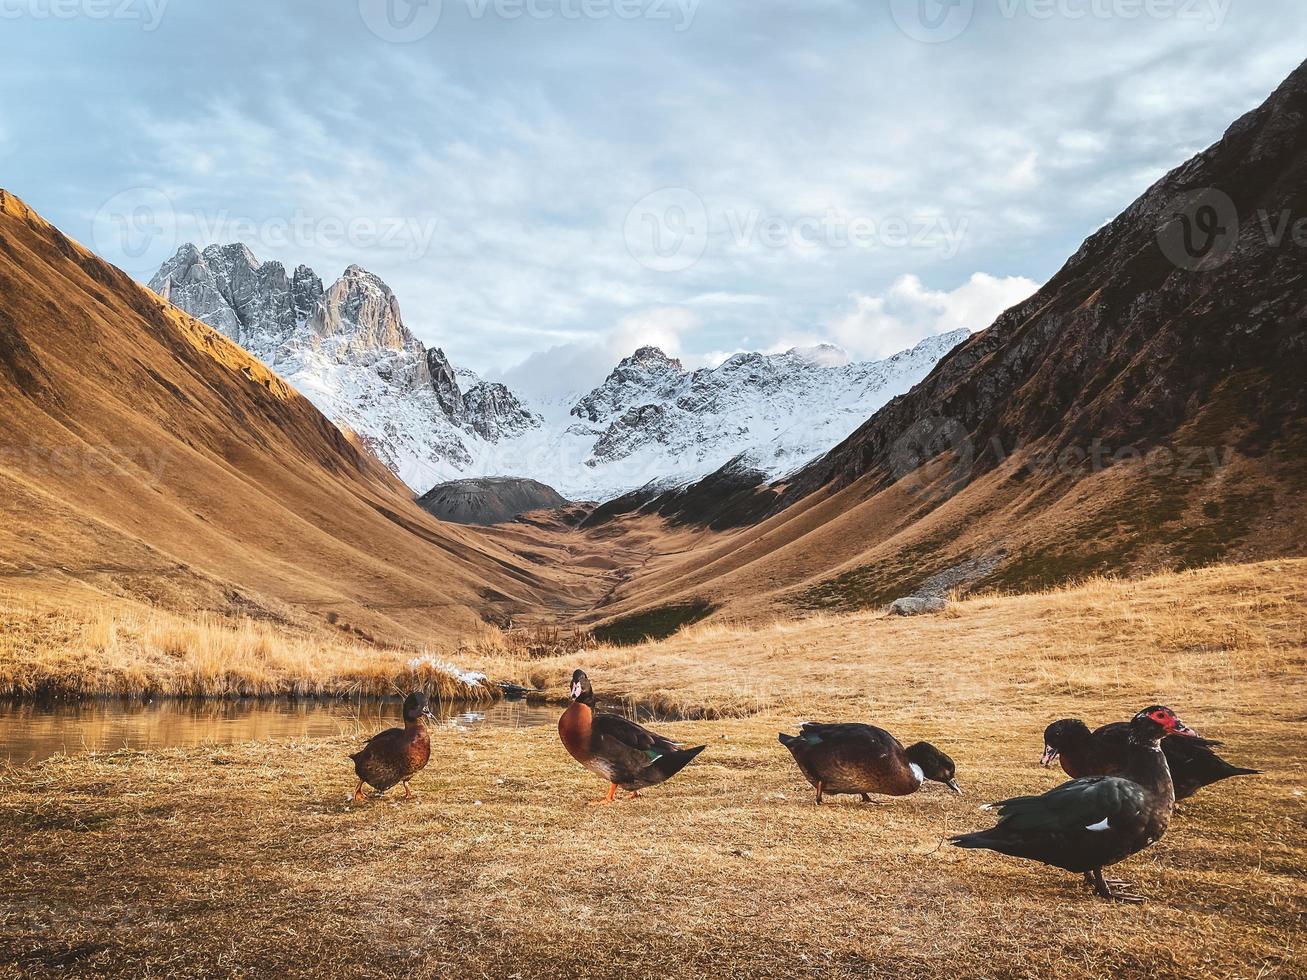 patos coloridos pela quinta temporada famosa pousada na rota de caminhada juta no parque nacional kazbegi ao ar livre no outono. destino de viagem da georgia e fauna da flora rural foto